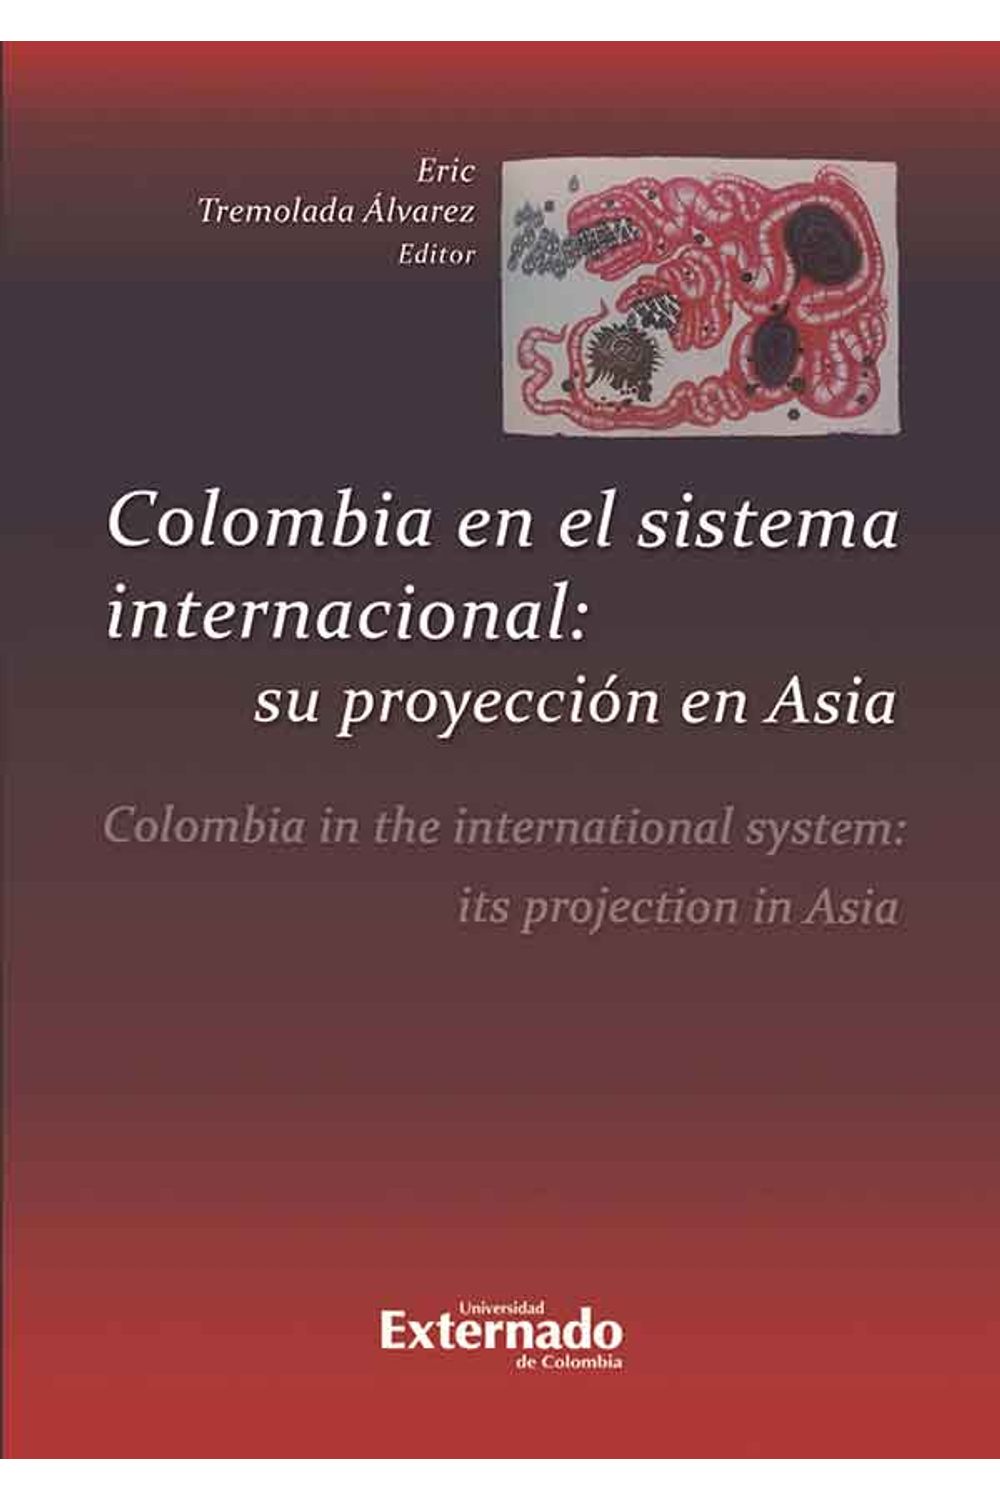 bw-colombia-en-el-sistema-internacional-su-proyeccioacuten-en-asia-u-externado-de-colombia-9789587721331